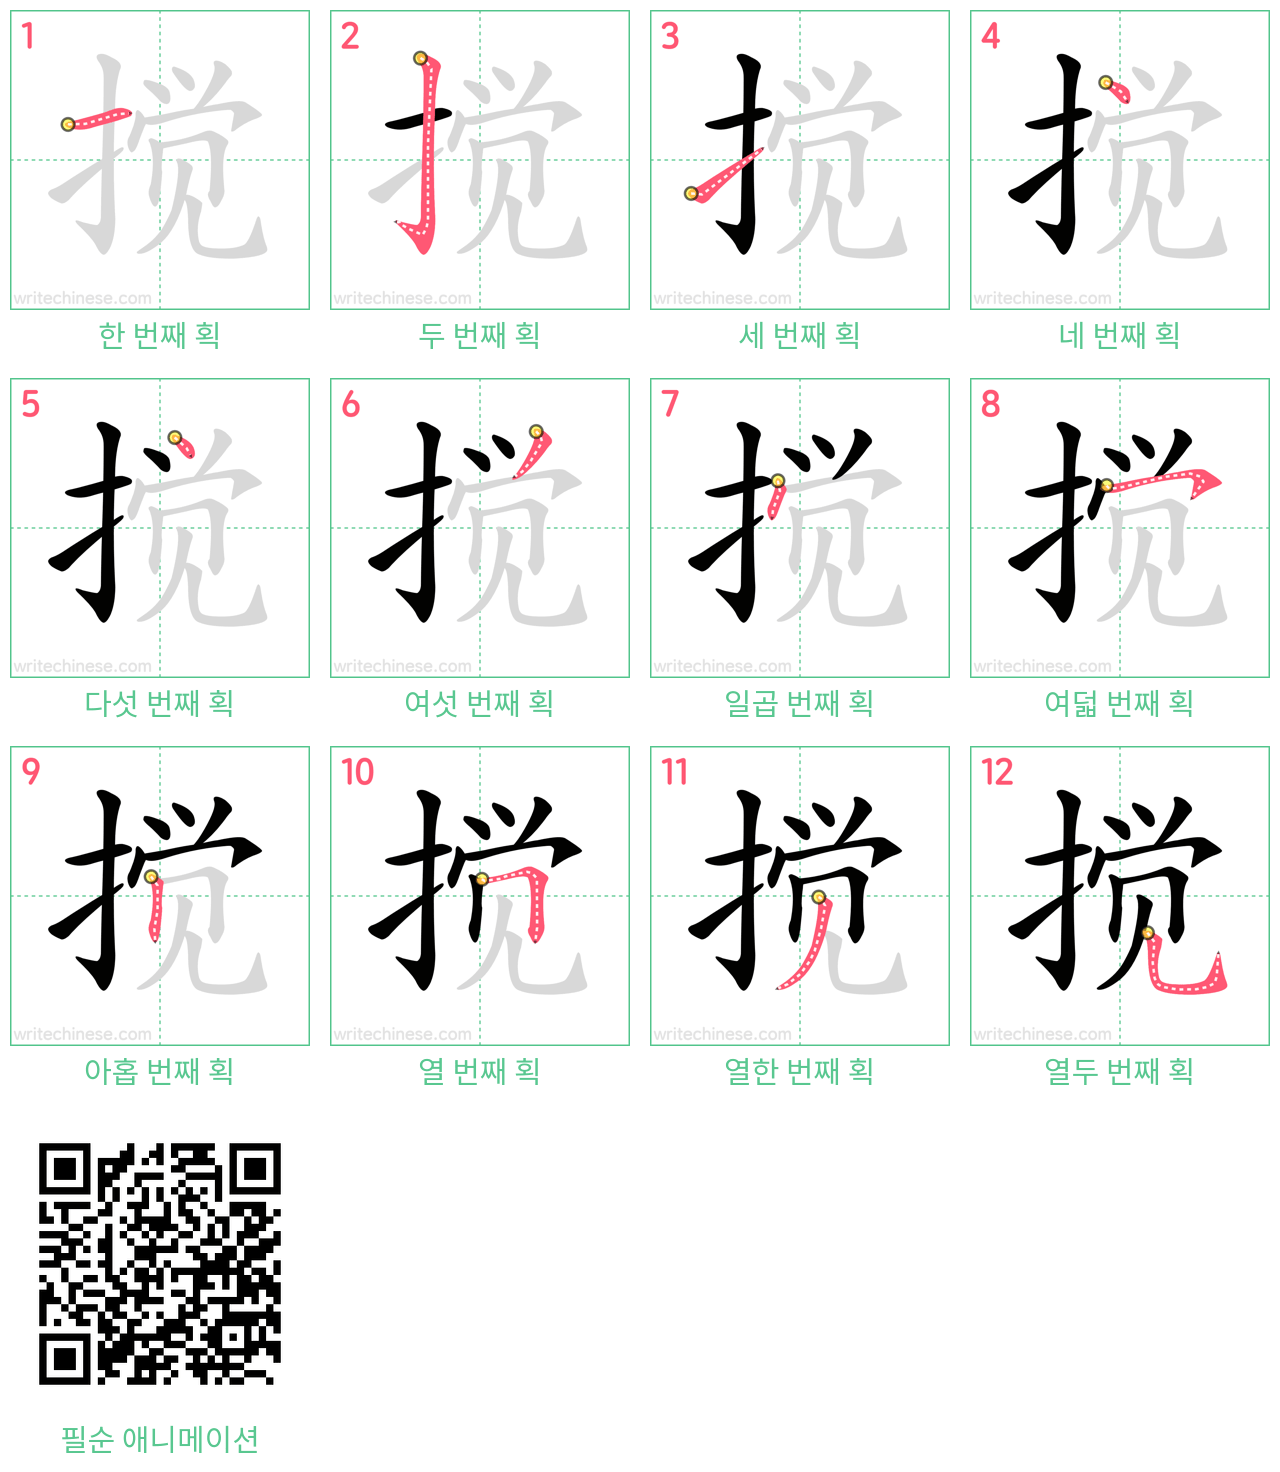 搅 step-by-step stroke order diagrams